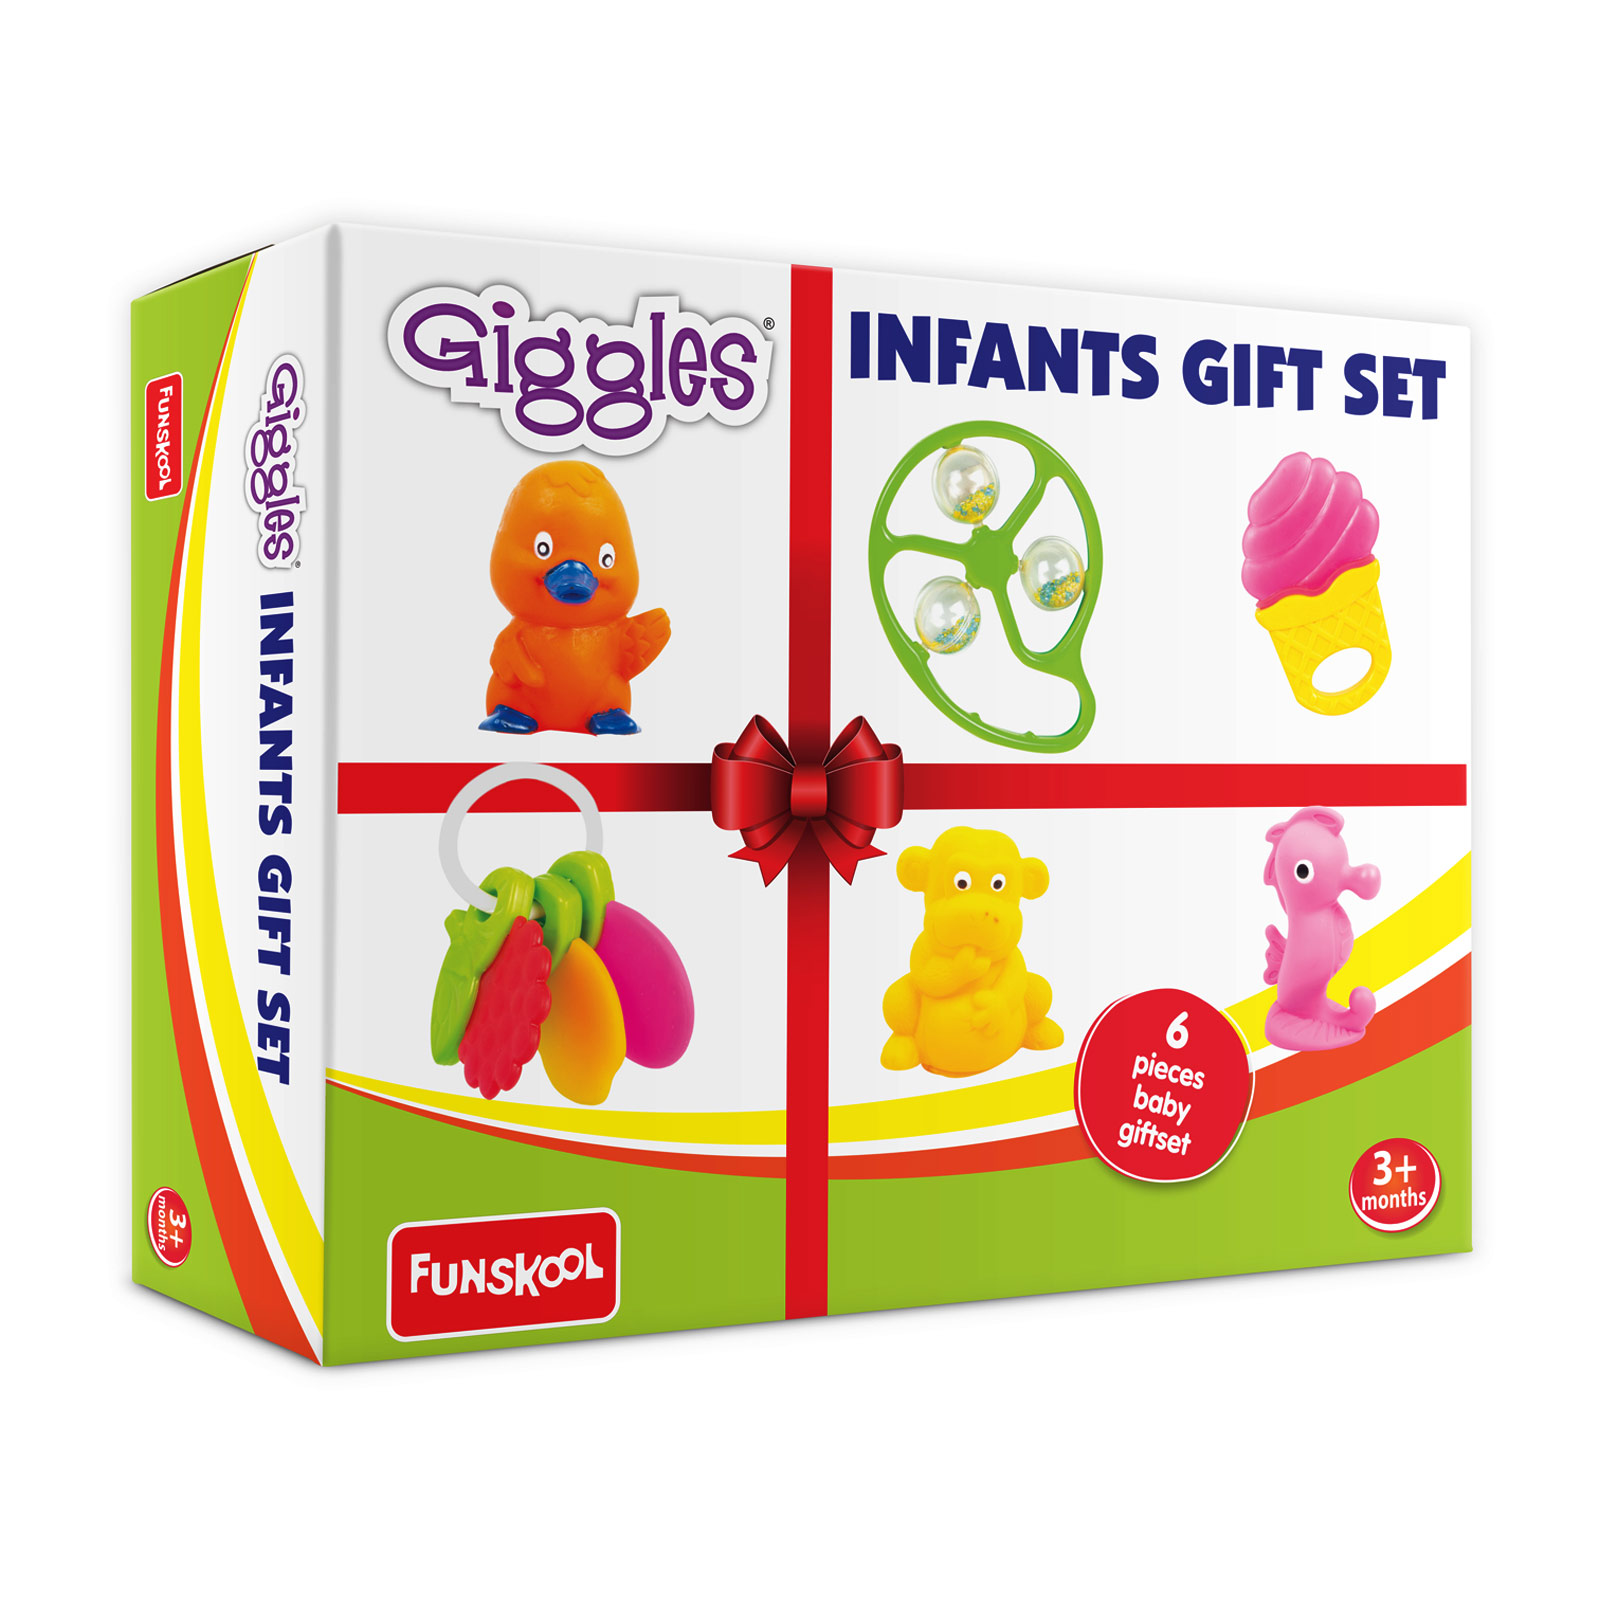 Infants Gift Set